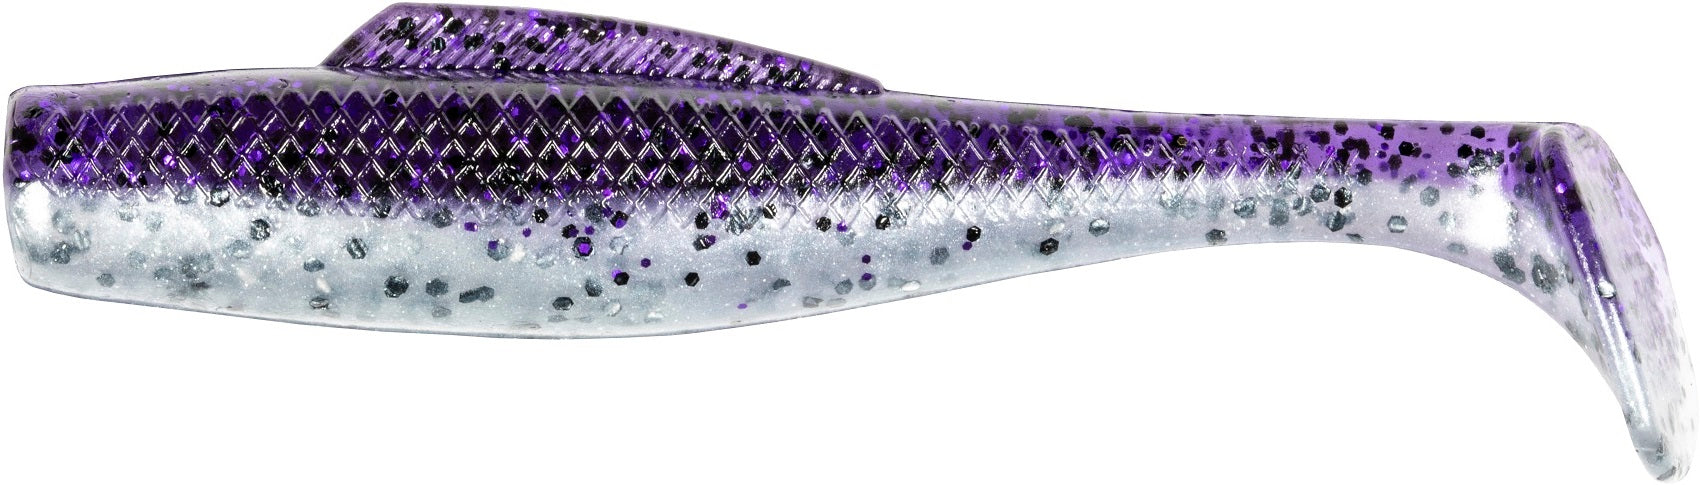 Zinx Mini Super Blade TG 3/8oz [Brand New] #ZX-024 Muddy Crystal